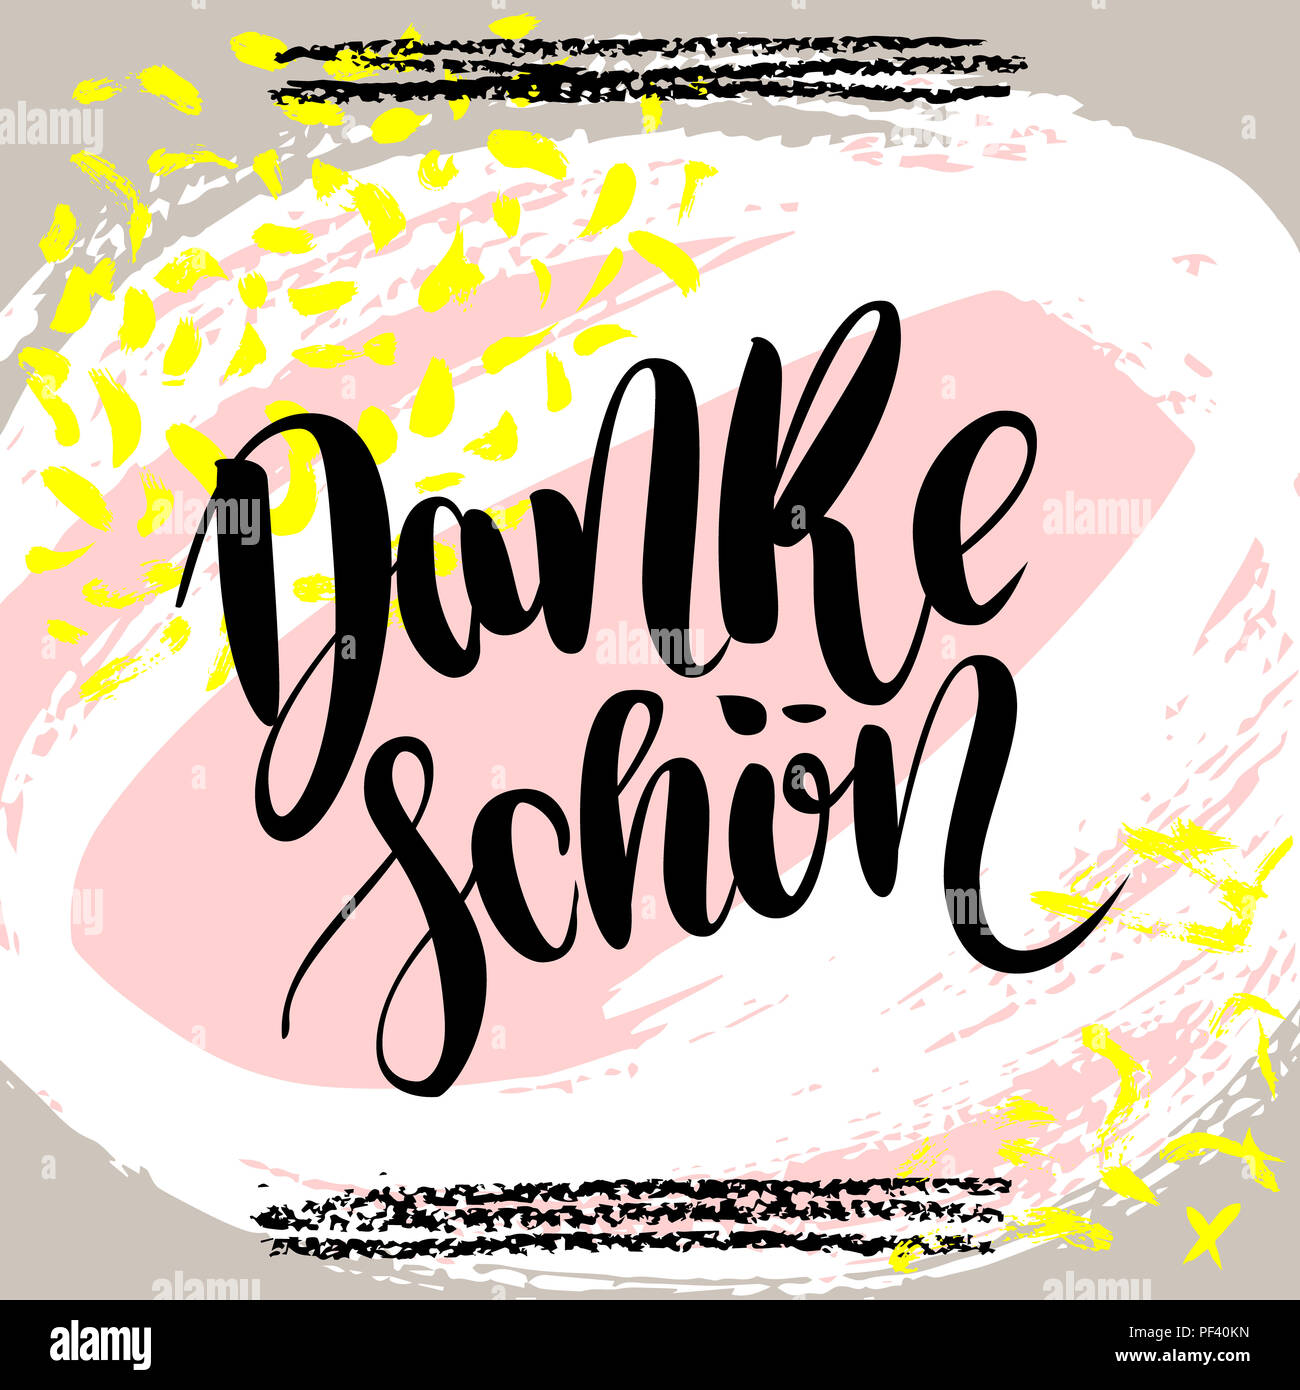 Danke schoen. Ringrazio in tedesco. disegnati a mano lettering spazzola su sfondo colorato. Preventivo motivazionale per cartolina, social media, pronto per l'uso. Ab Foto Stock